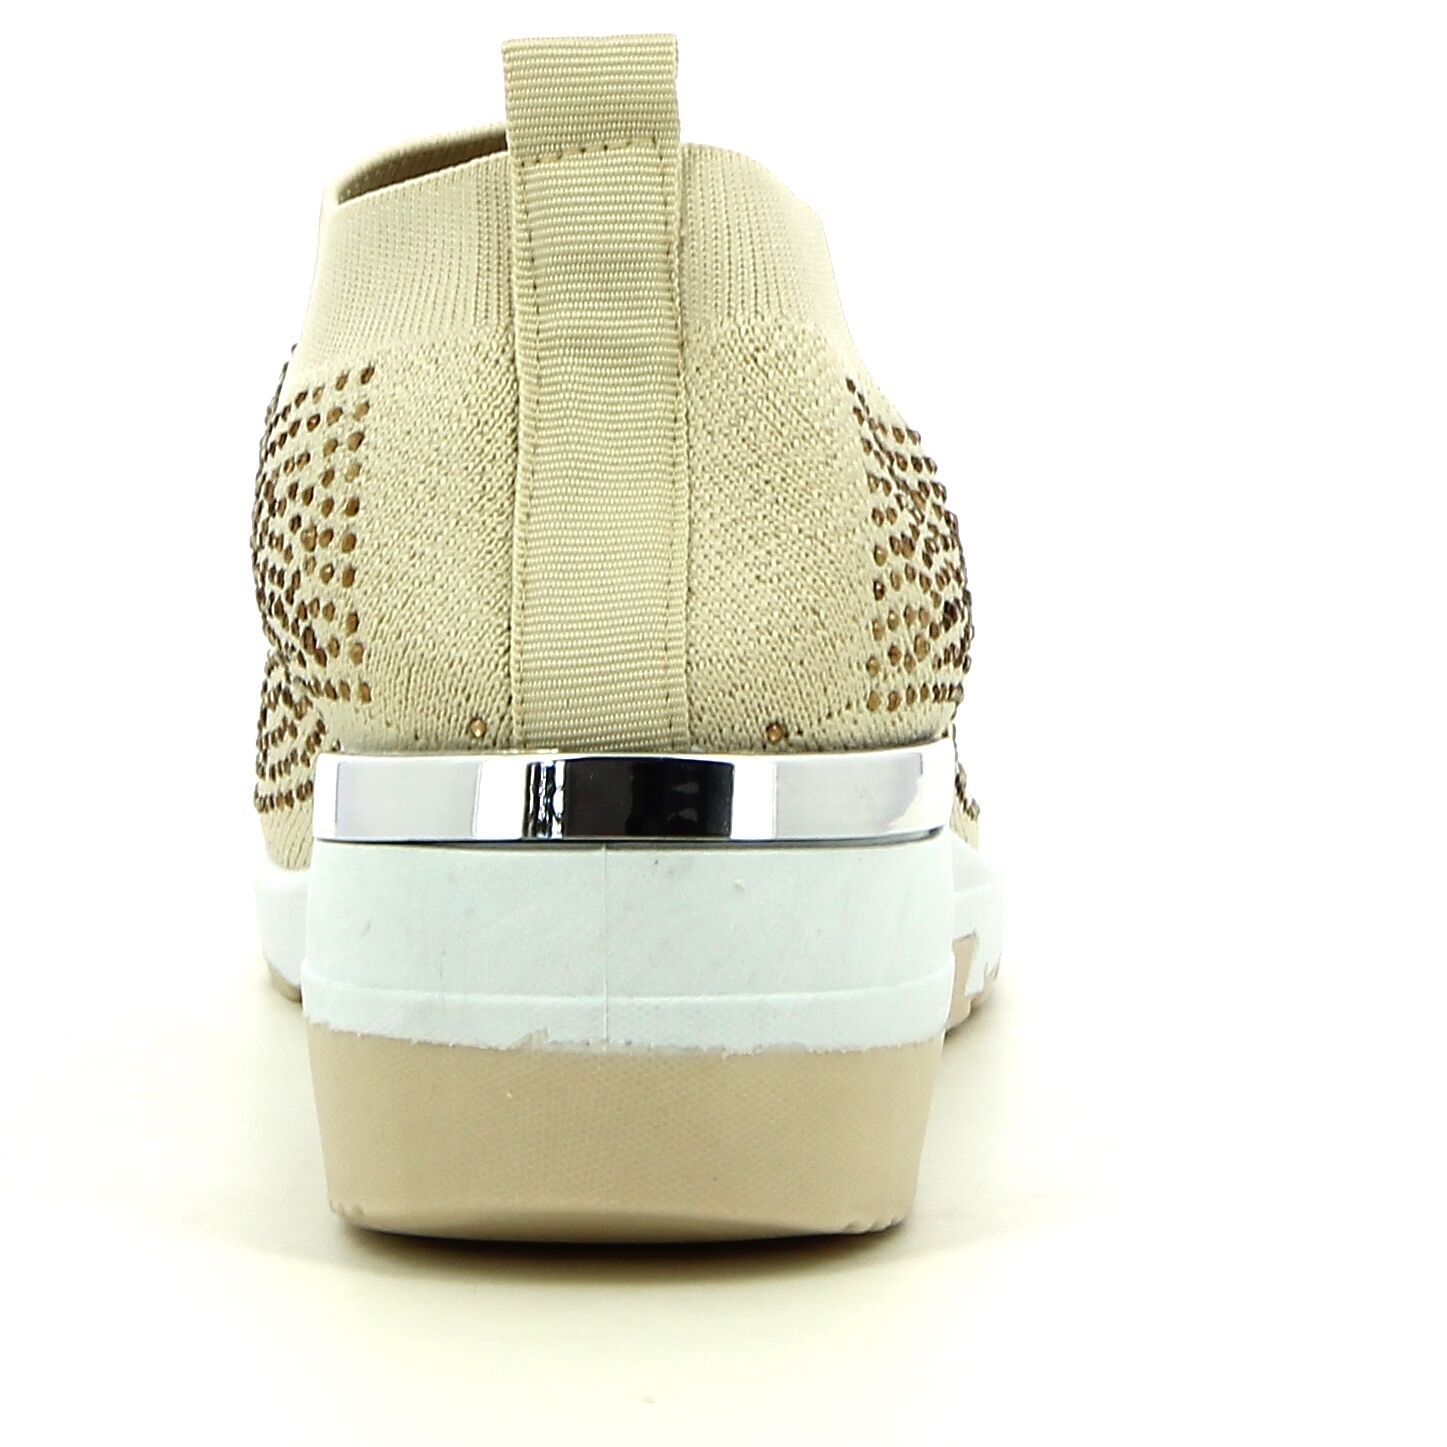 Ken Shoe Fashion - Beige - Sneakers